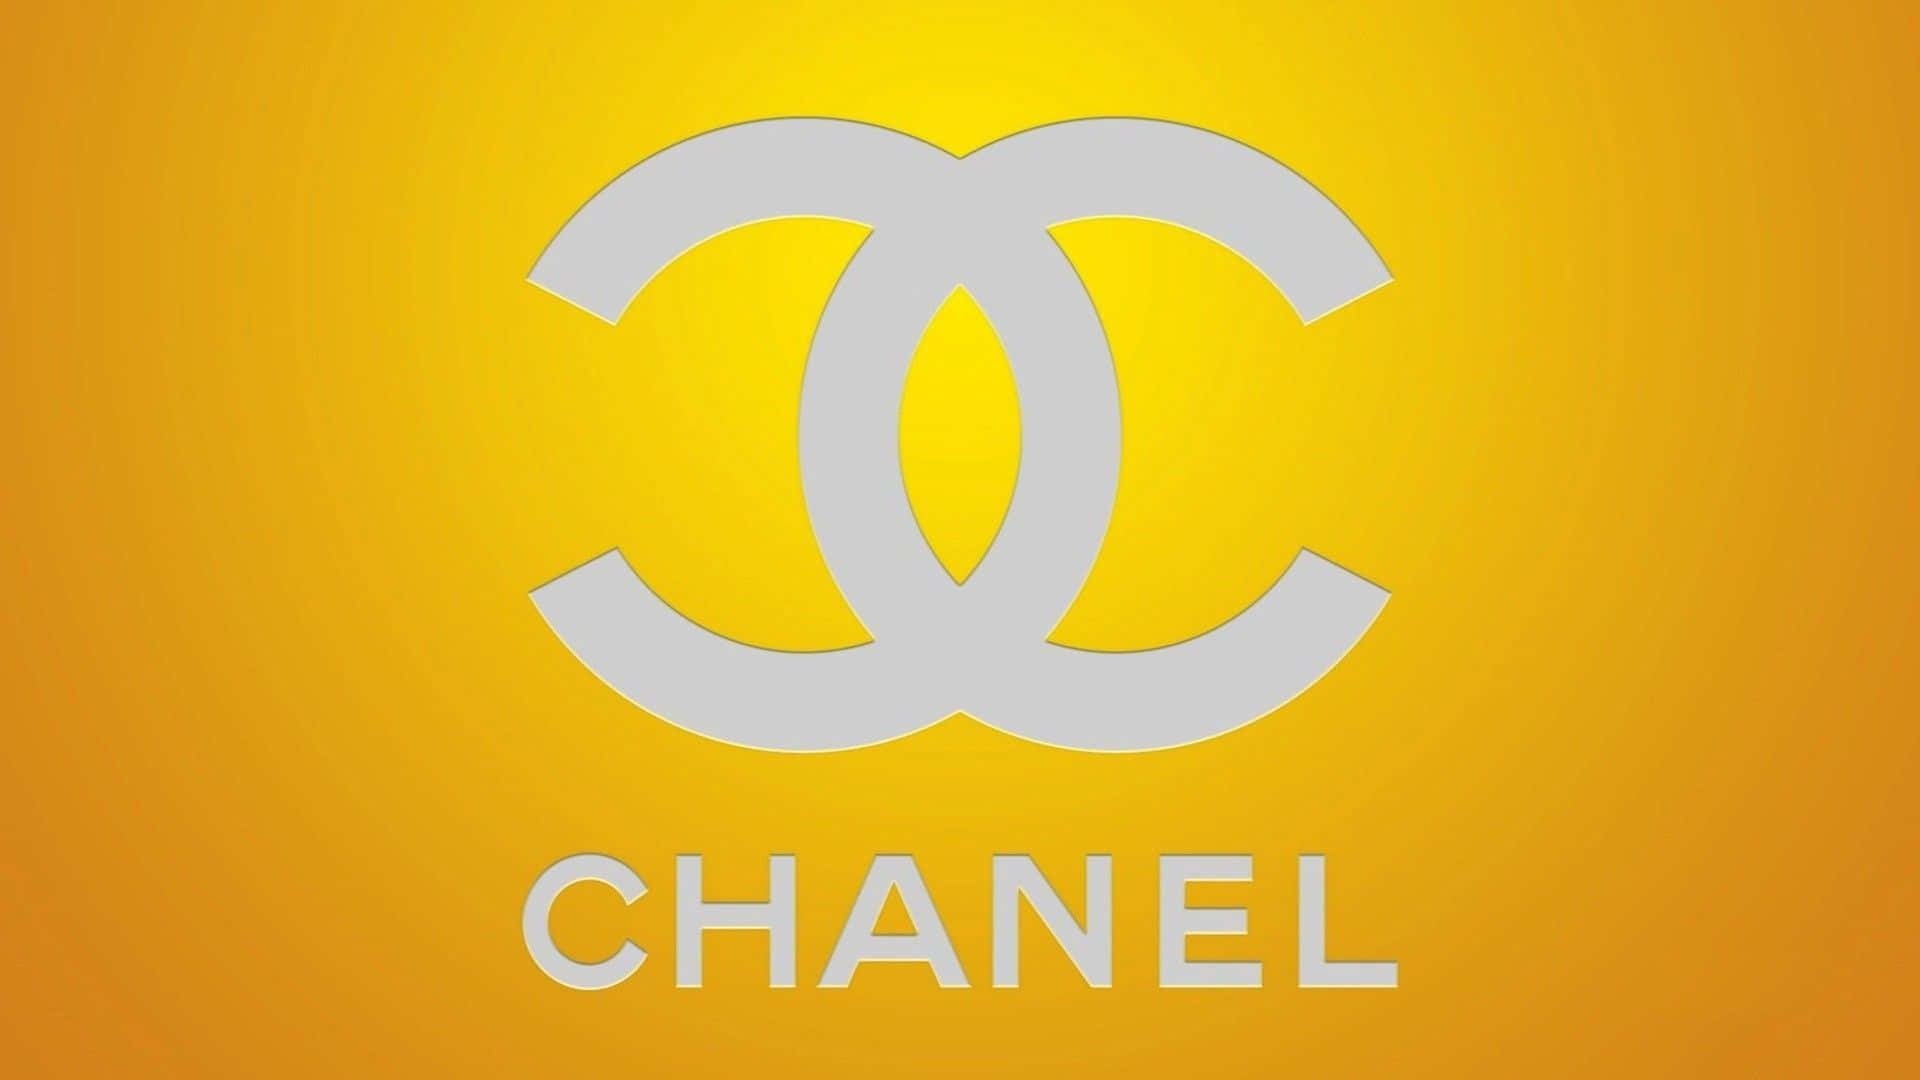 Chanellogo Auf Orangem Hintergrund